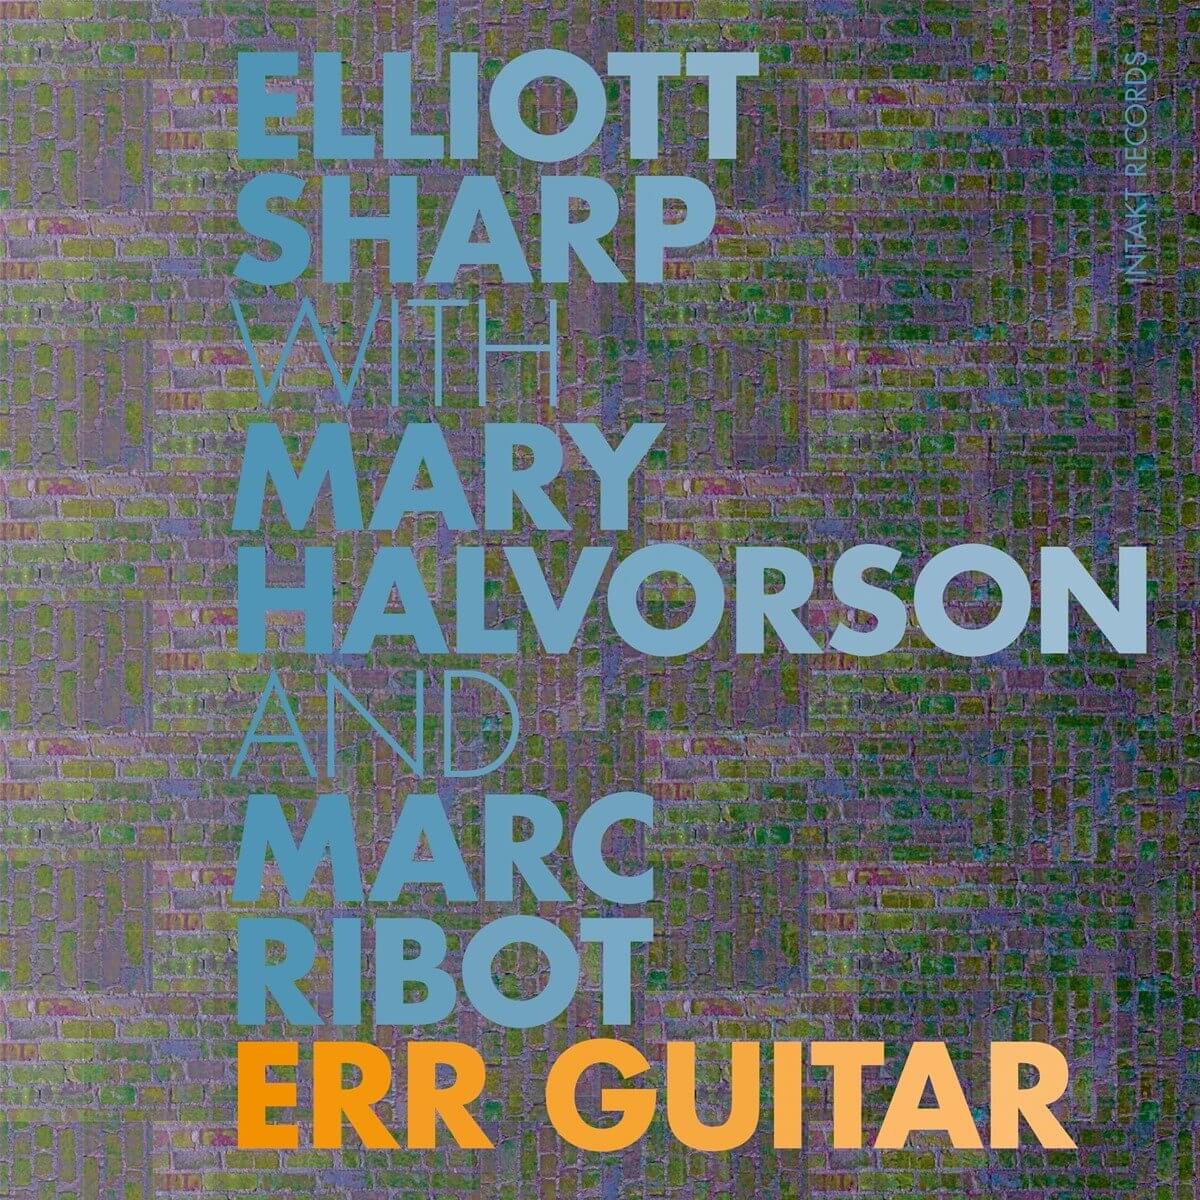 err-guitar-cover